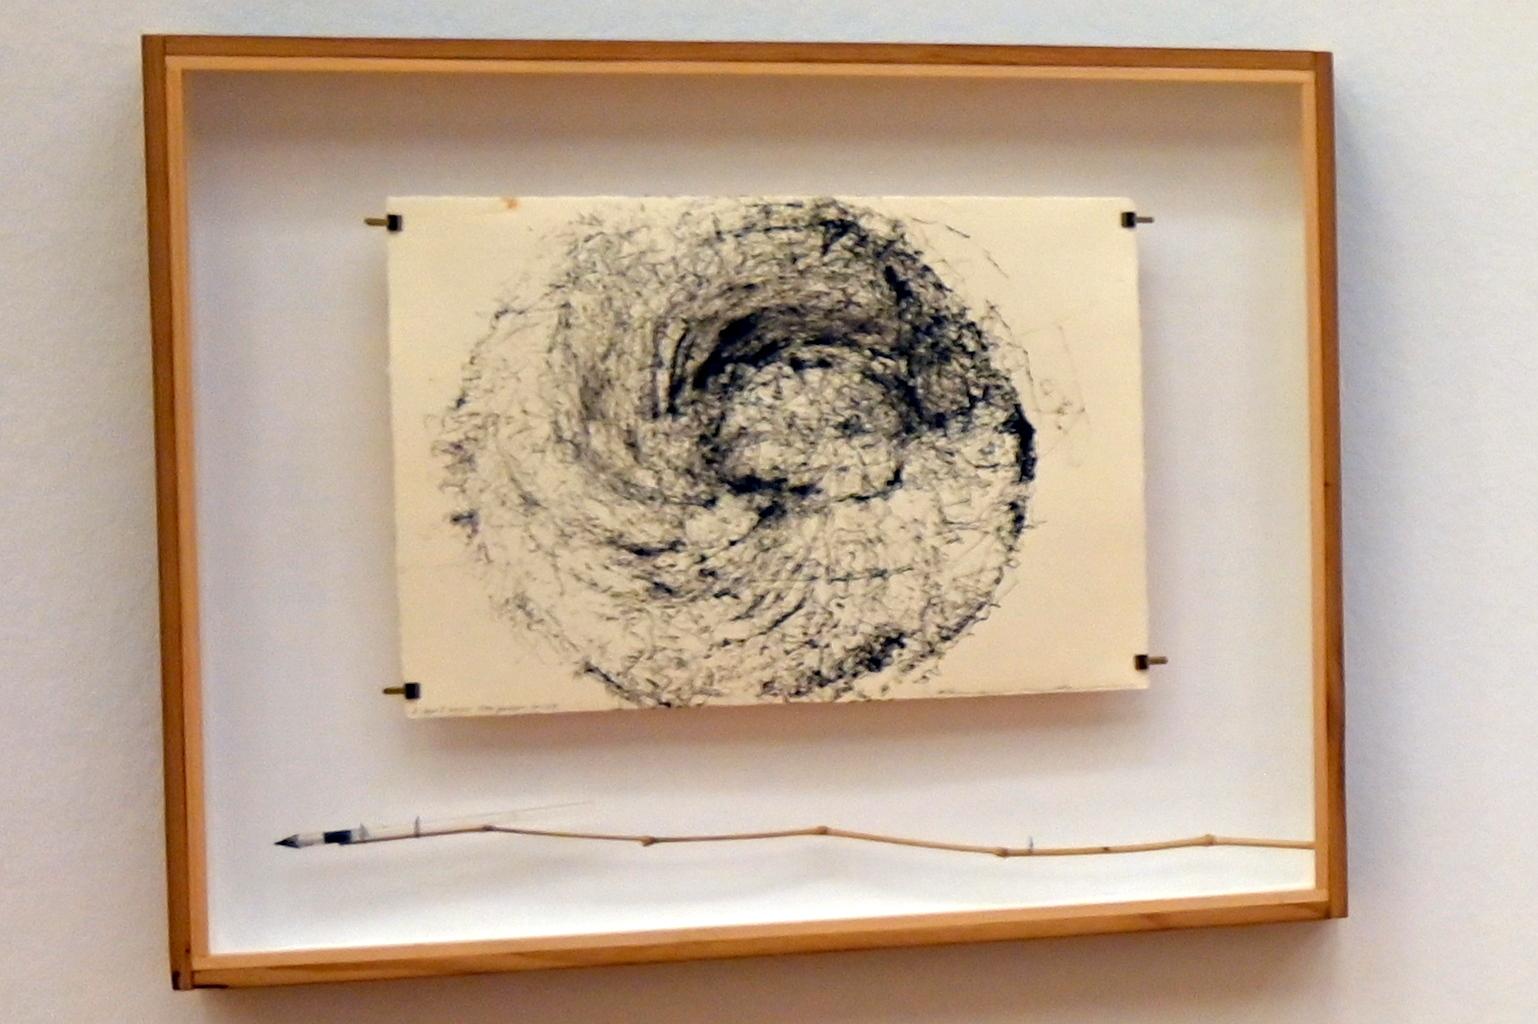 Rikuo Ueda (1997–2022), 05.04.2020 Ota Garden 12:28, Bonn, Kunstmuseum, Ausstellung "Welt in der Schwebe" vom 24.02. - 19.06.2022, Saal 6, 2020, Bild 1/2